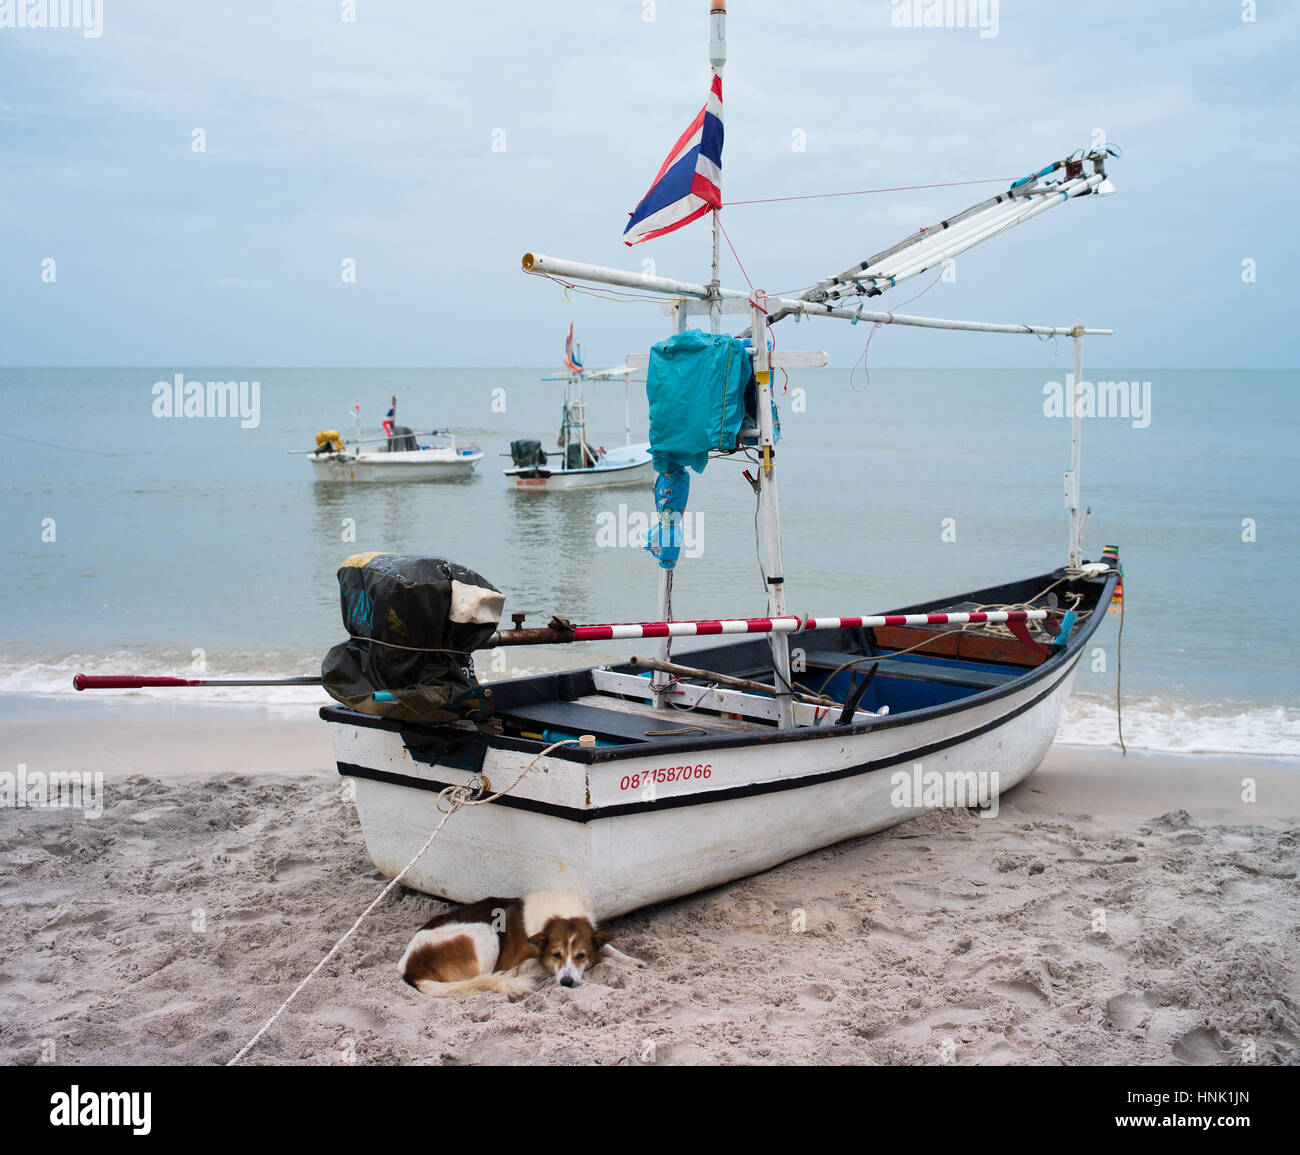 Boat on the beach Hua Hin Thailand Stock Photo